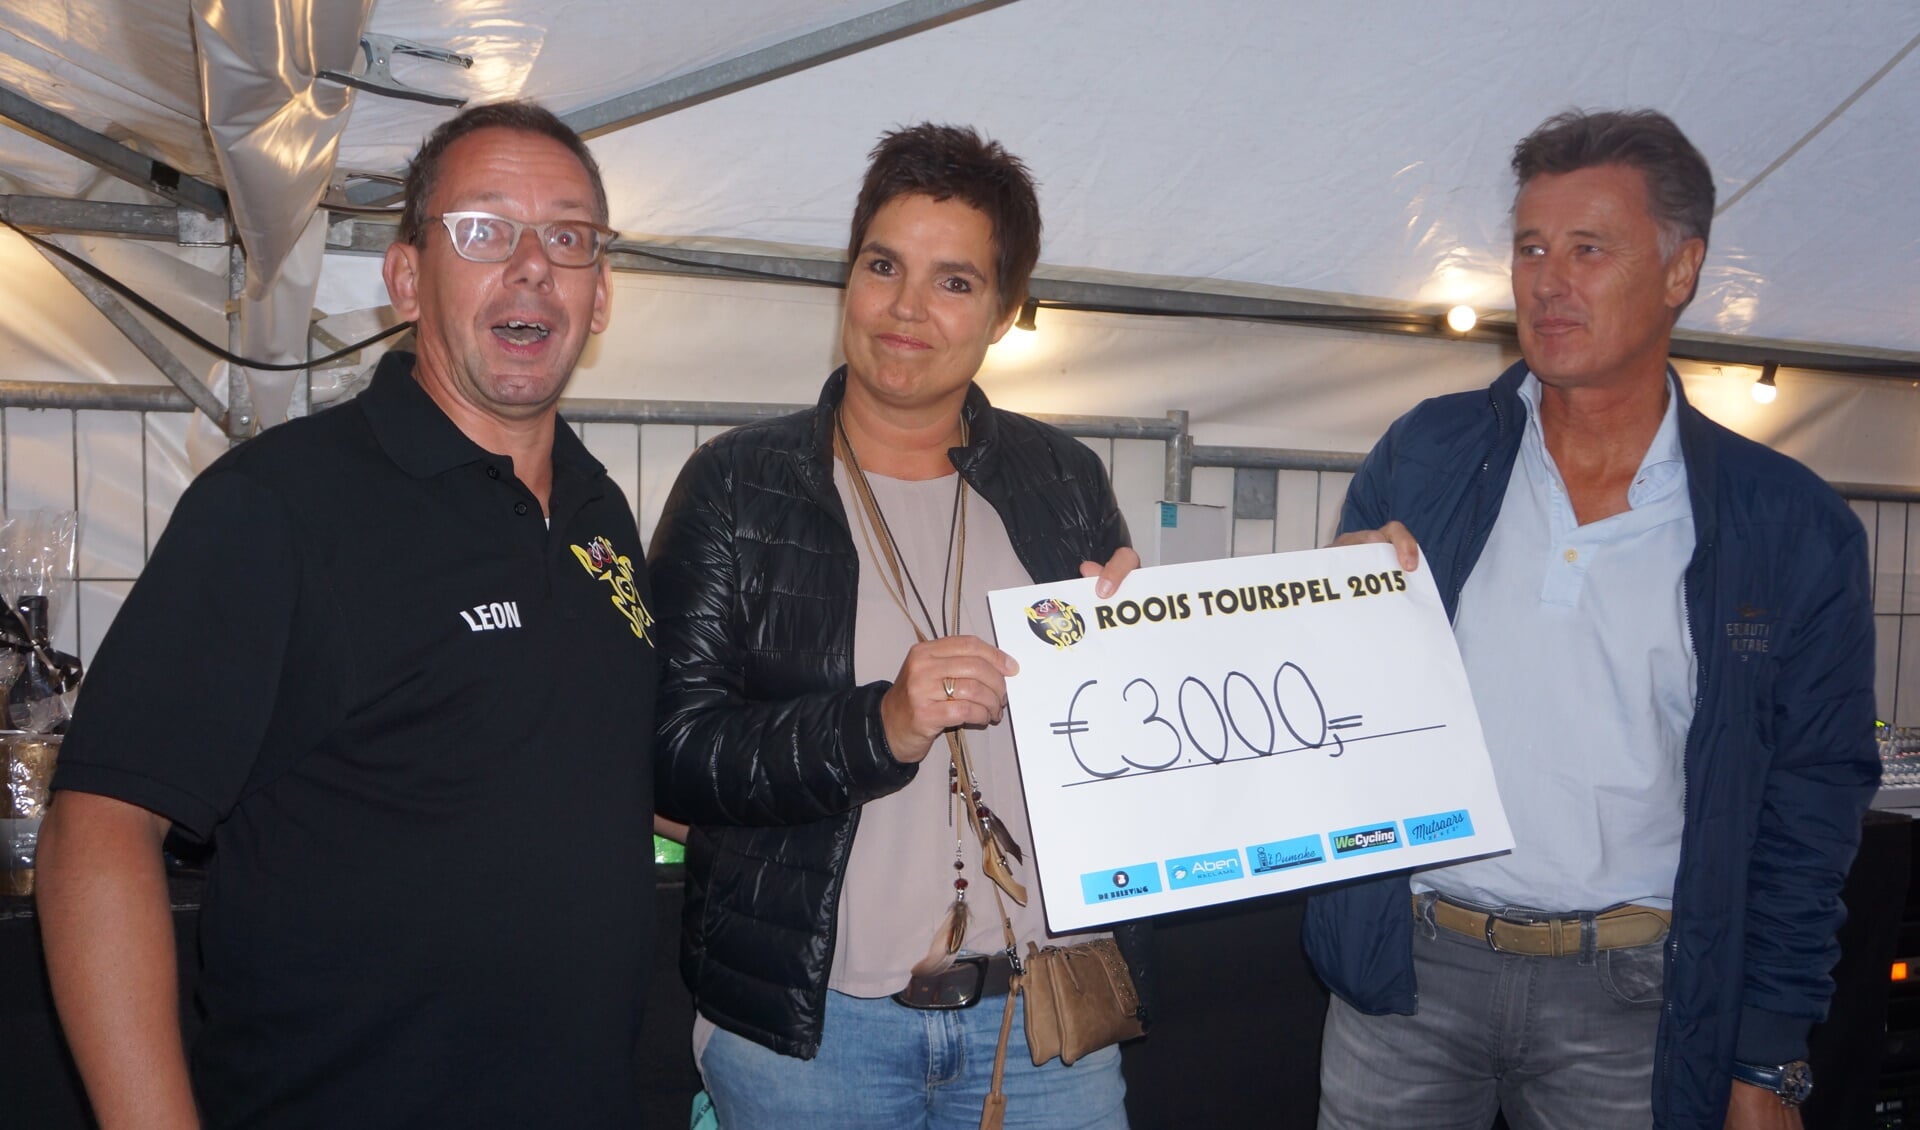 Vorig jaar ontving Hospice Dommelrode een bedrag van 3000 euro